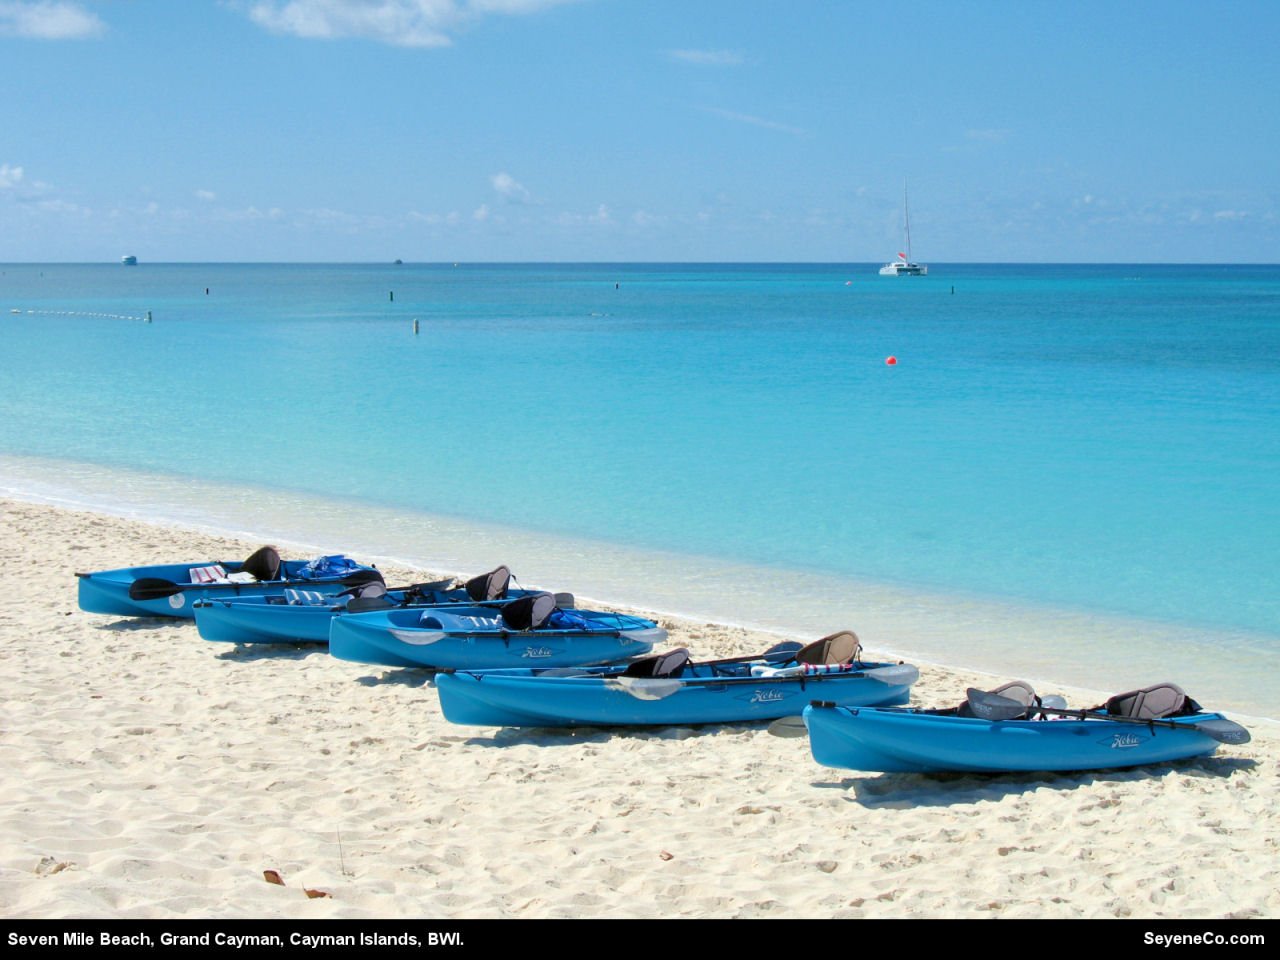 Free Cayman Islands Desktop Wallpaper from SeyeneCo